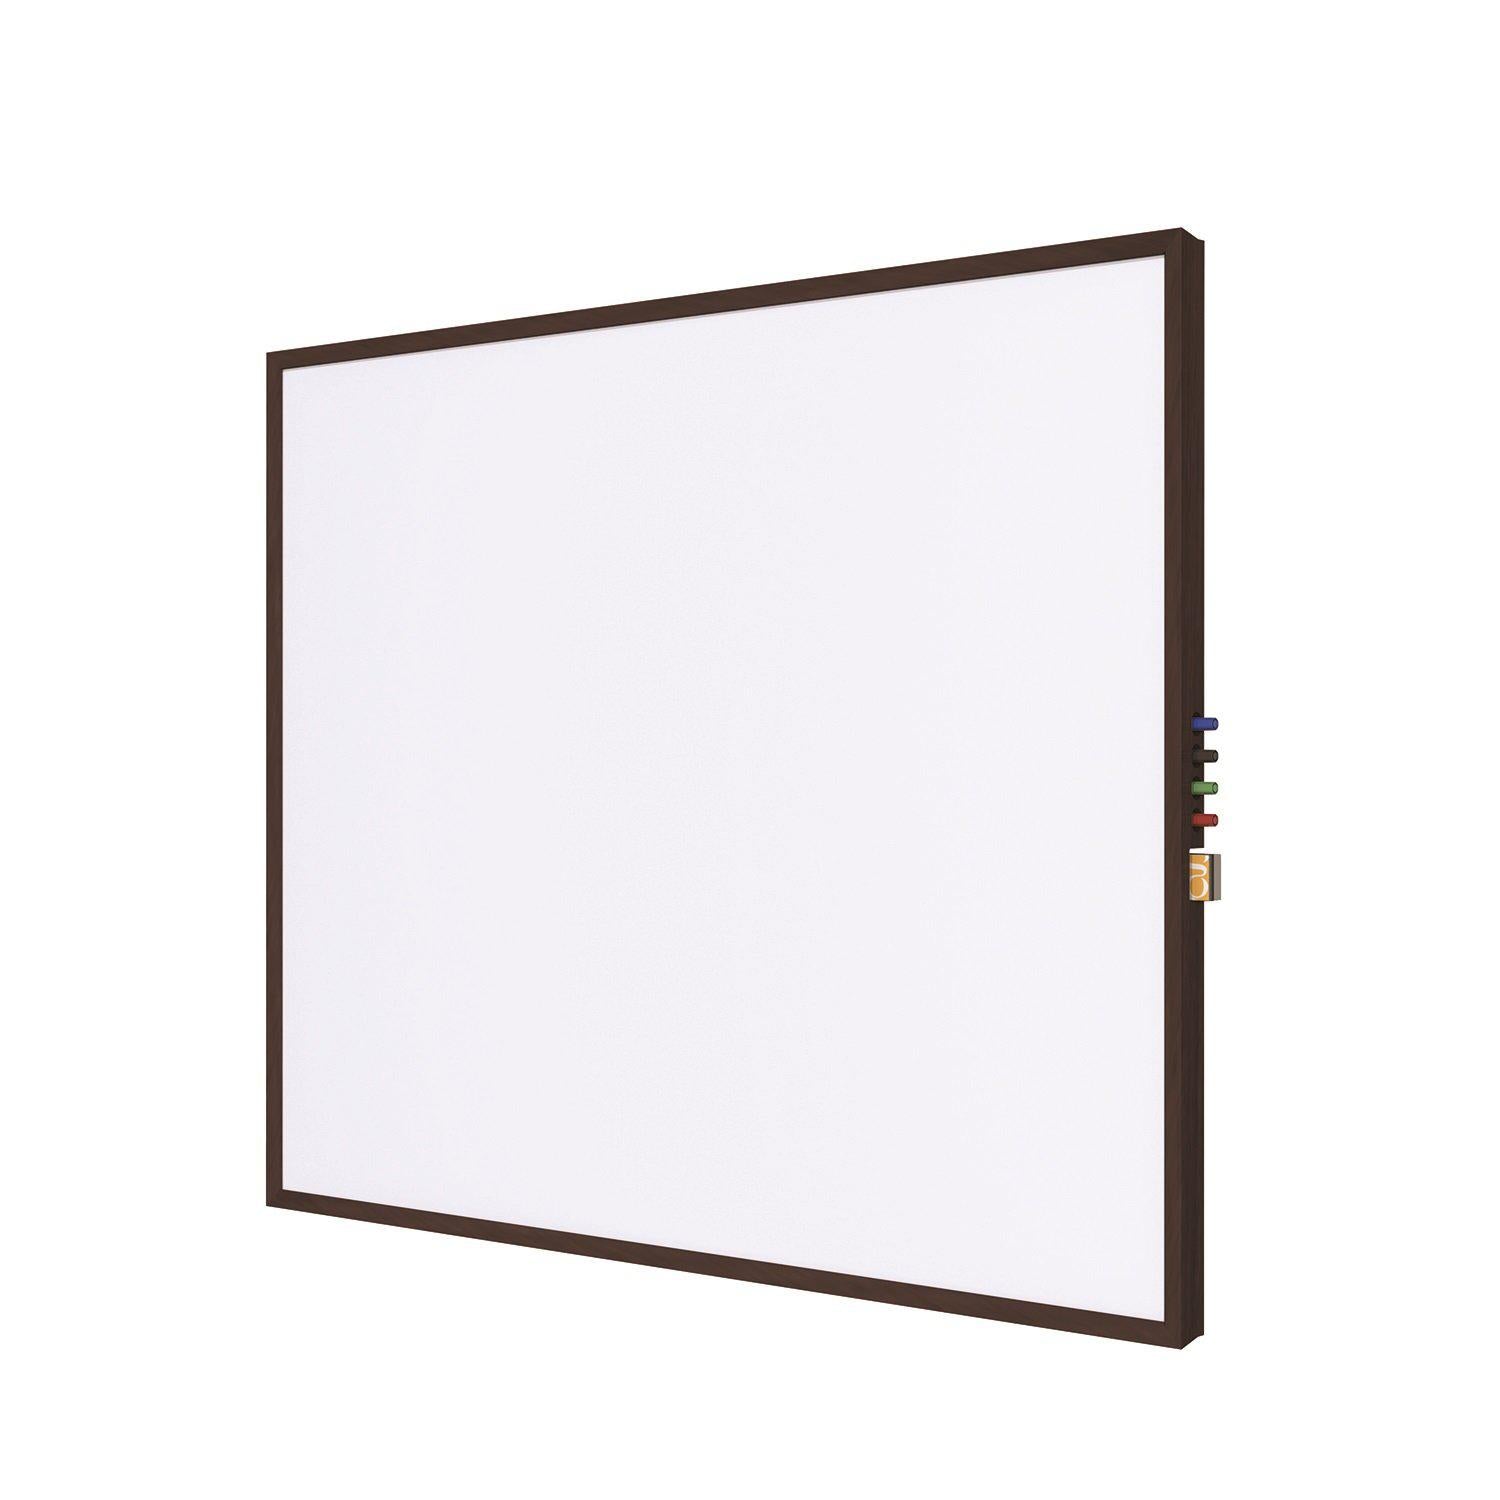 Impression Wood Framed Magnetic Porcelain Whiteboard, 2' H x 3' W